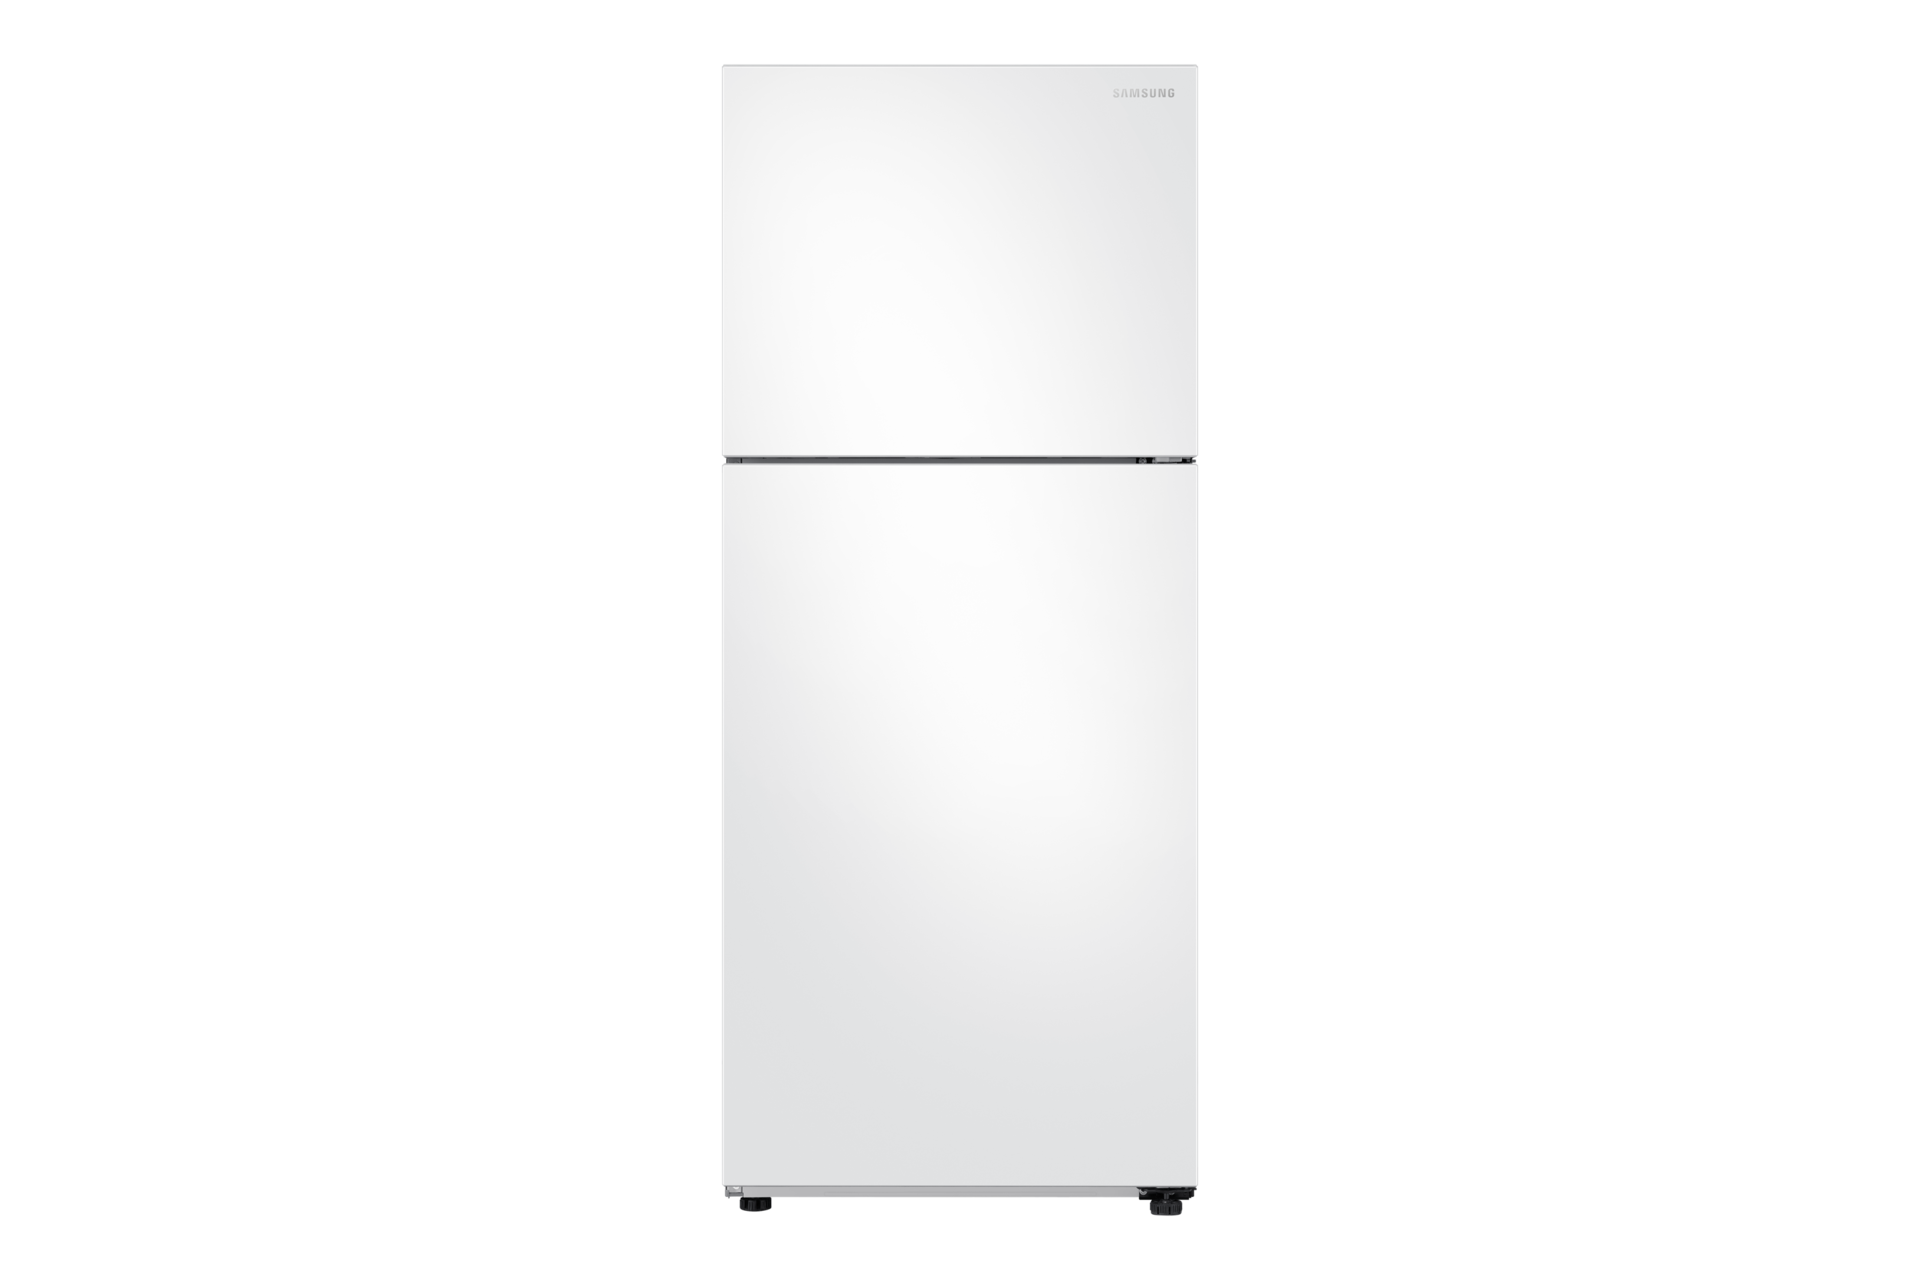 Réfrigérateur Samsung de 15,6 pi³ à congélateur supérieur - RT16A61